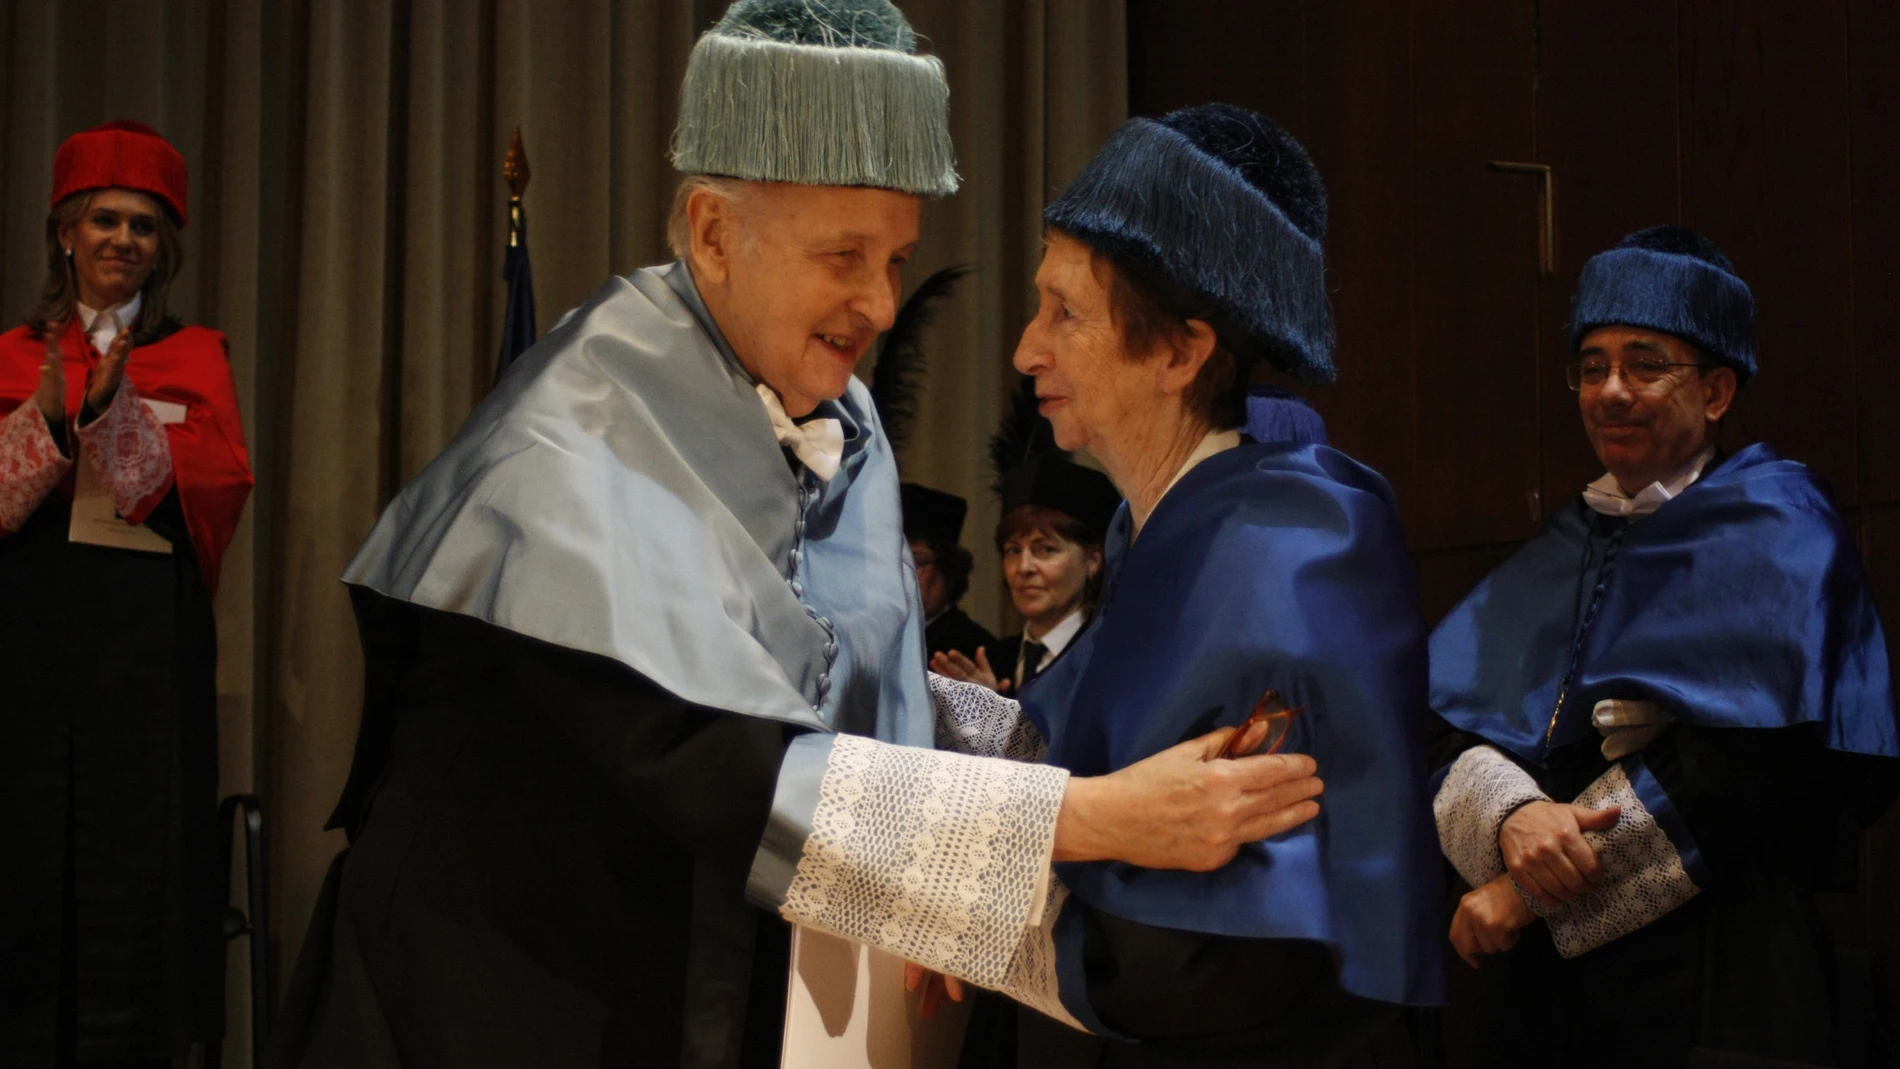 Investidura de doctores honoris causa por la UNED a Margarita Salas y Santiago Grisolía, en 2011